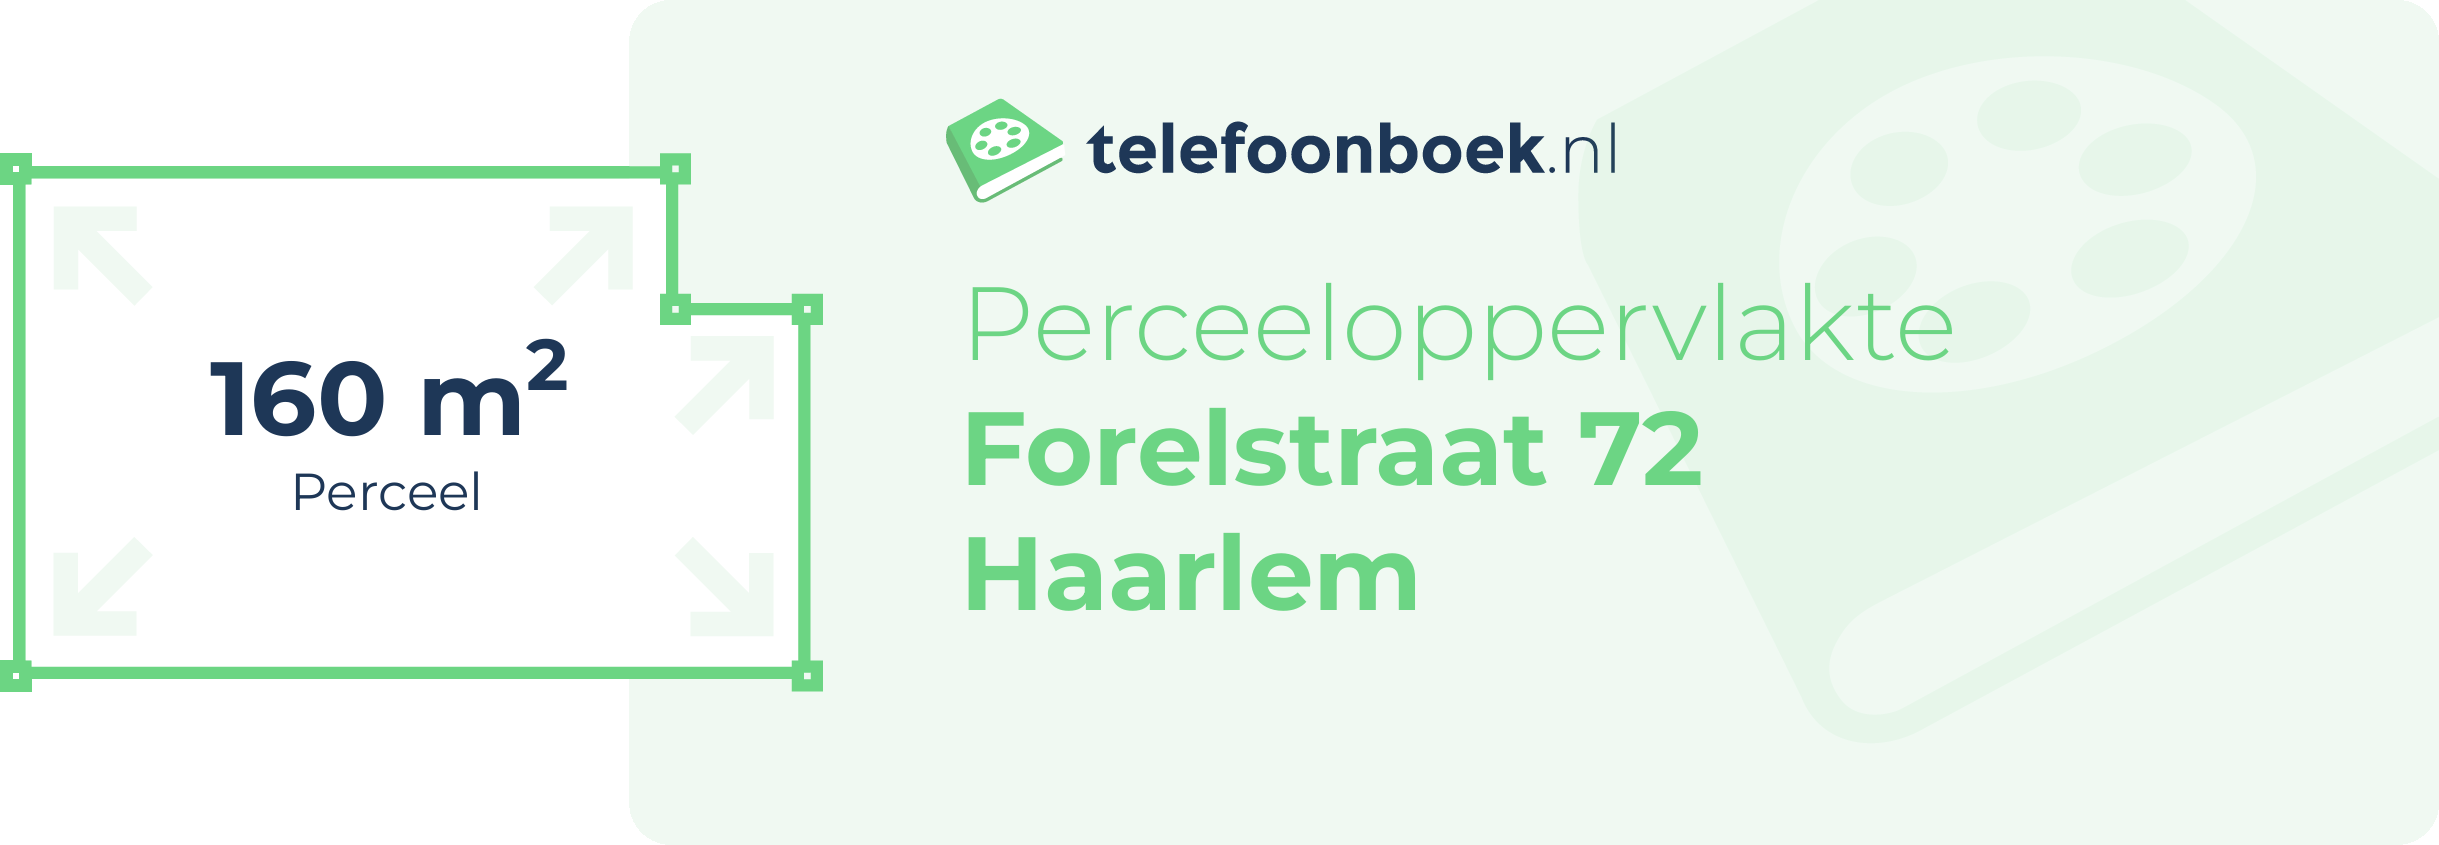 Perceeloppervlakte Forelstraat 72 Haarlem